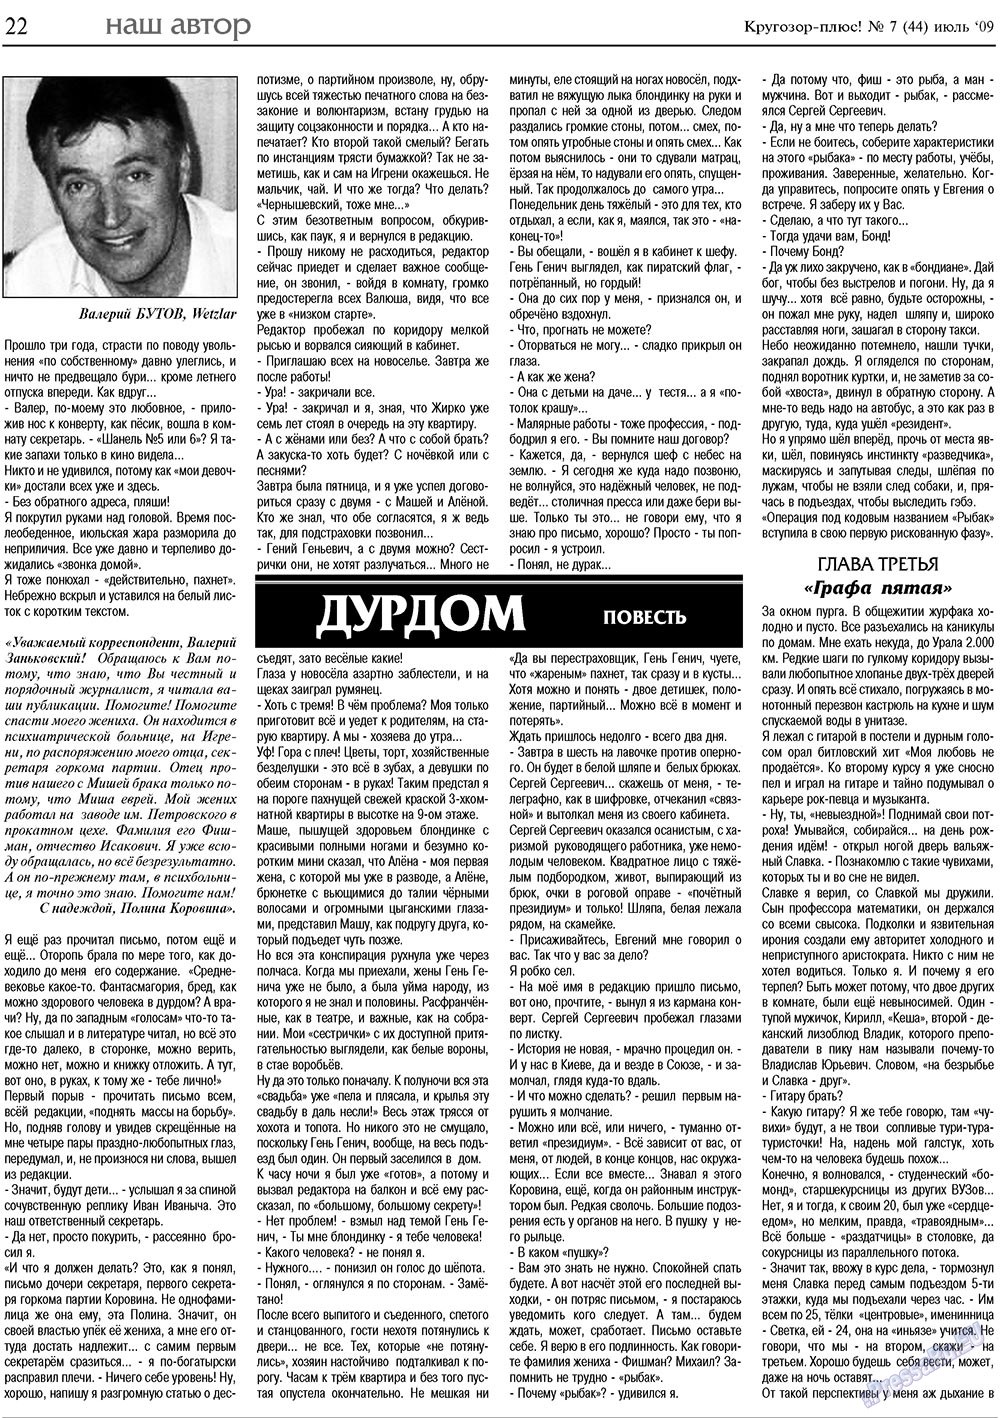 Кругозор плюс!, газета. 2009 №7 стр.22